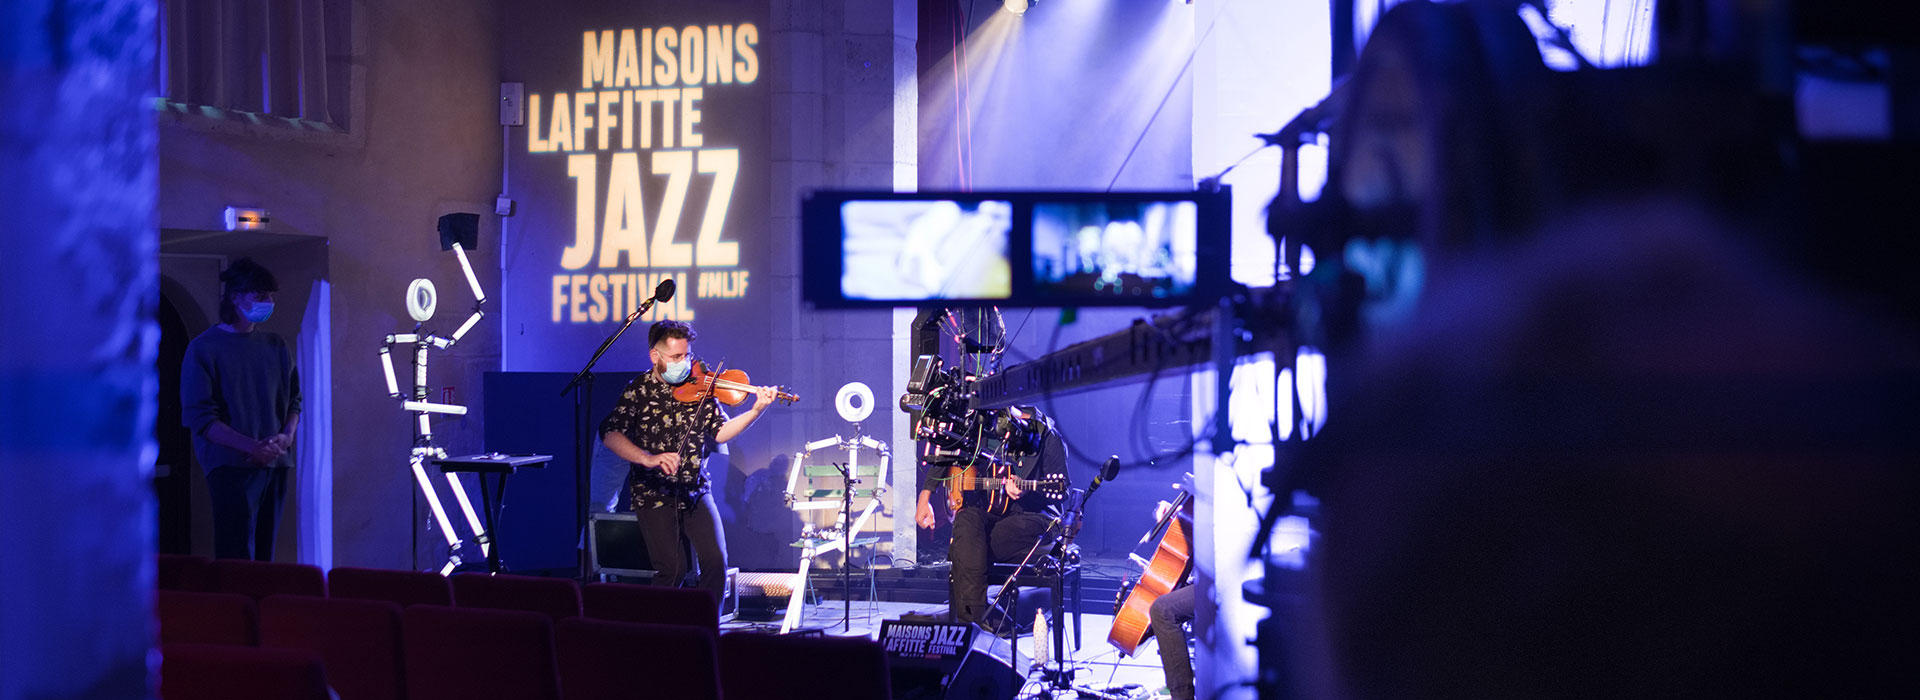 Concert Festival Maisons Laffitte Jazz